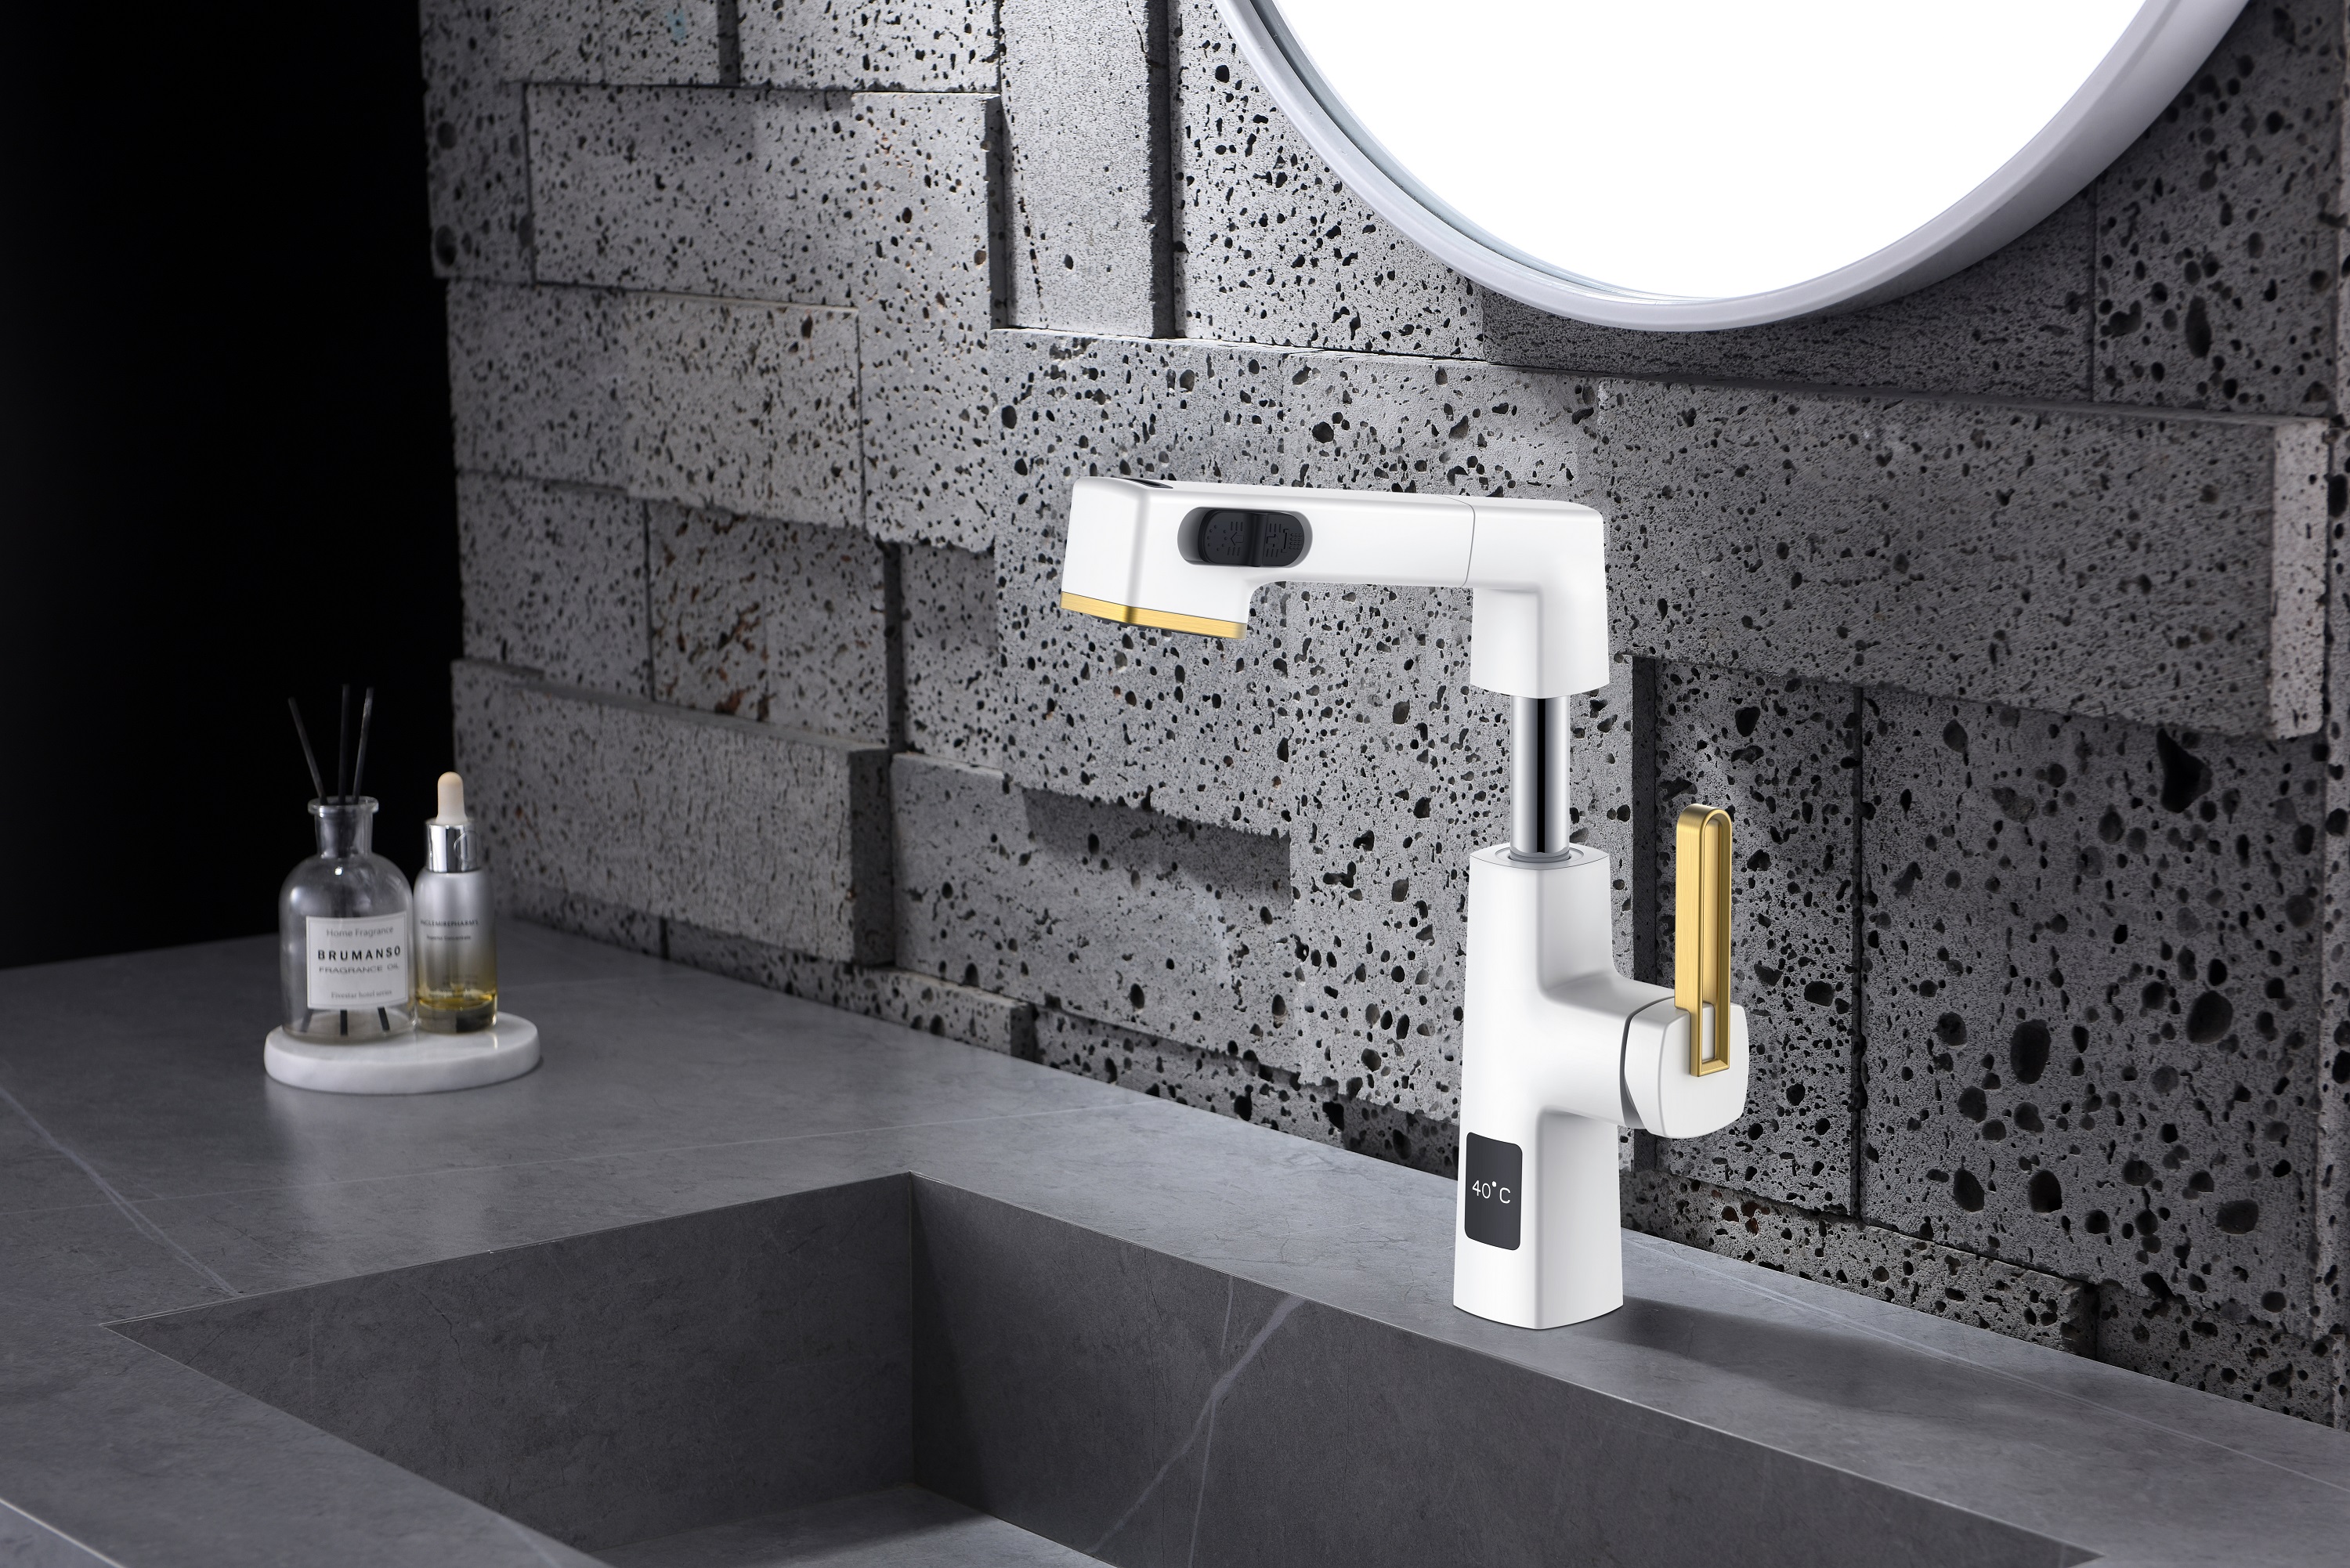  Hauteur réglable du robinet de salle de bains en acier inoxydable noir de conception unique d'affichage de la température